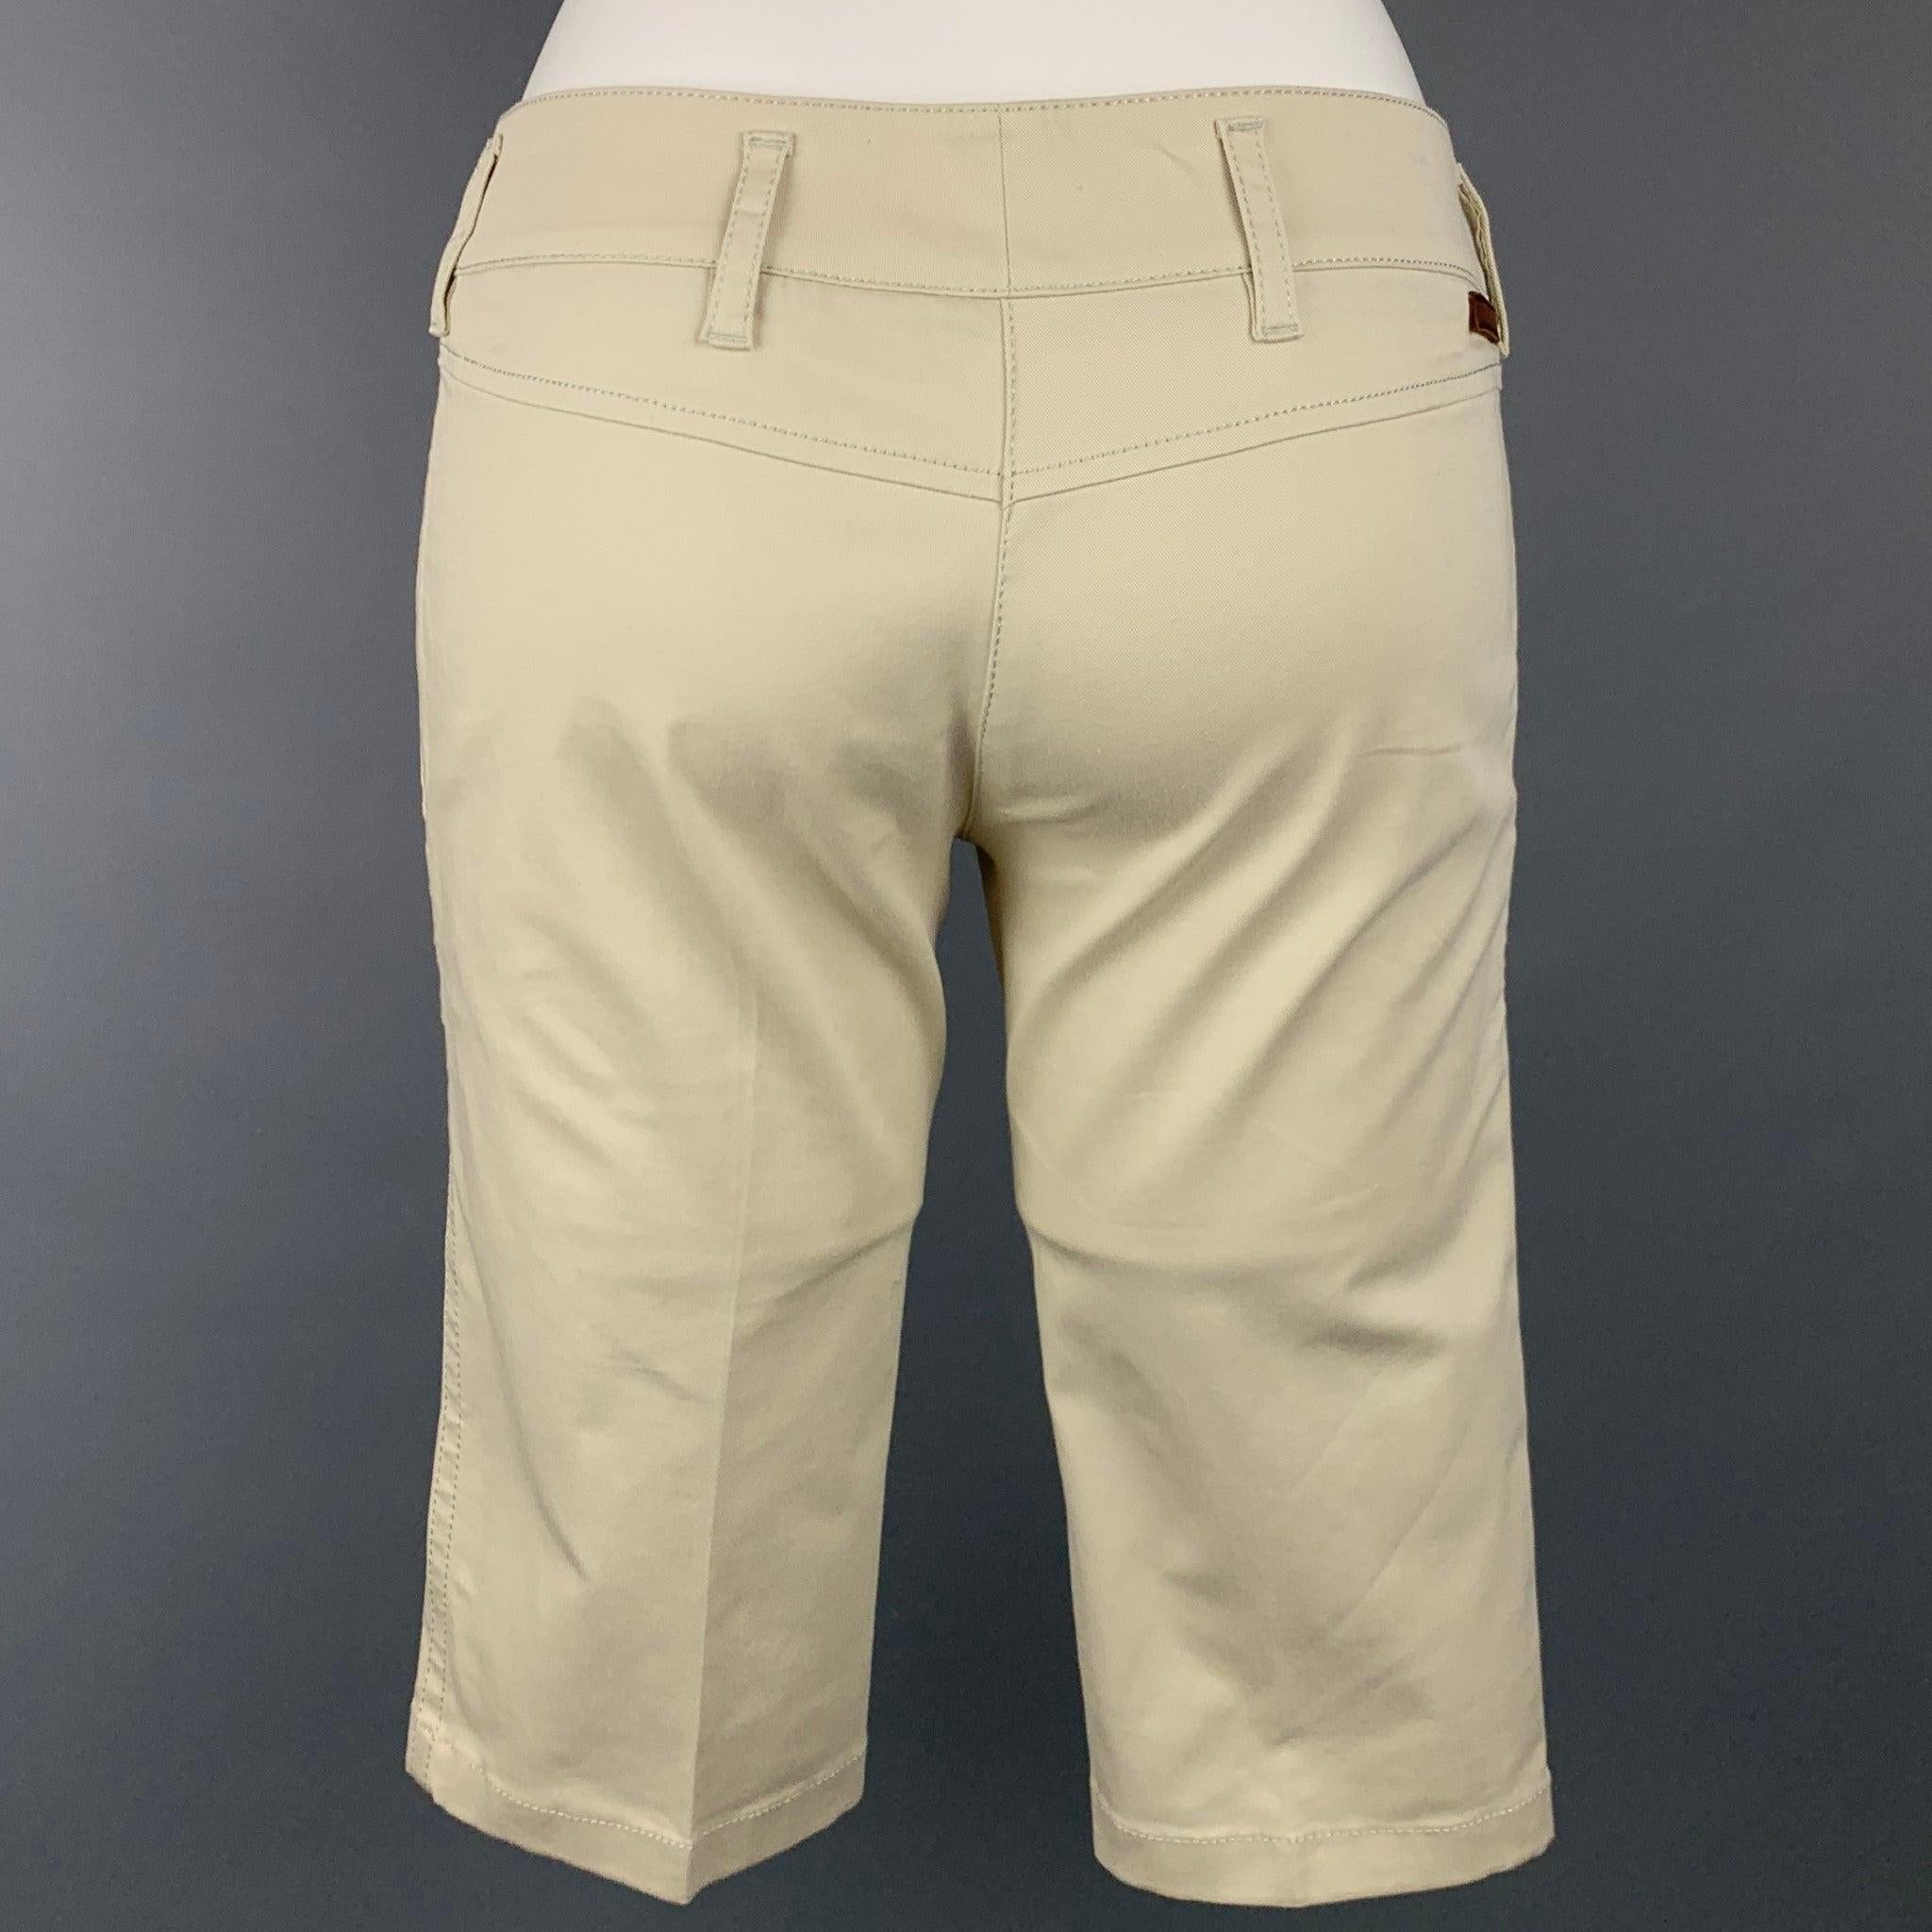 Ce short PRADA en coton beige présente un style bermuda, des poches fendues, une braguette zippée et une double fermeture à patte sur le devant.Très bien
Etat d'occasion. 

Marqué :   38 

Mesures : 
  Taille : 30 pouces  Montée : 7.5 pouces 